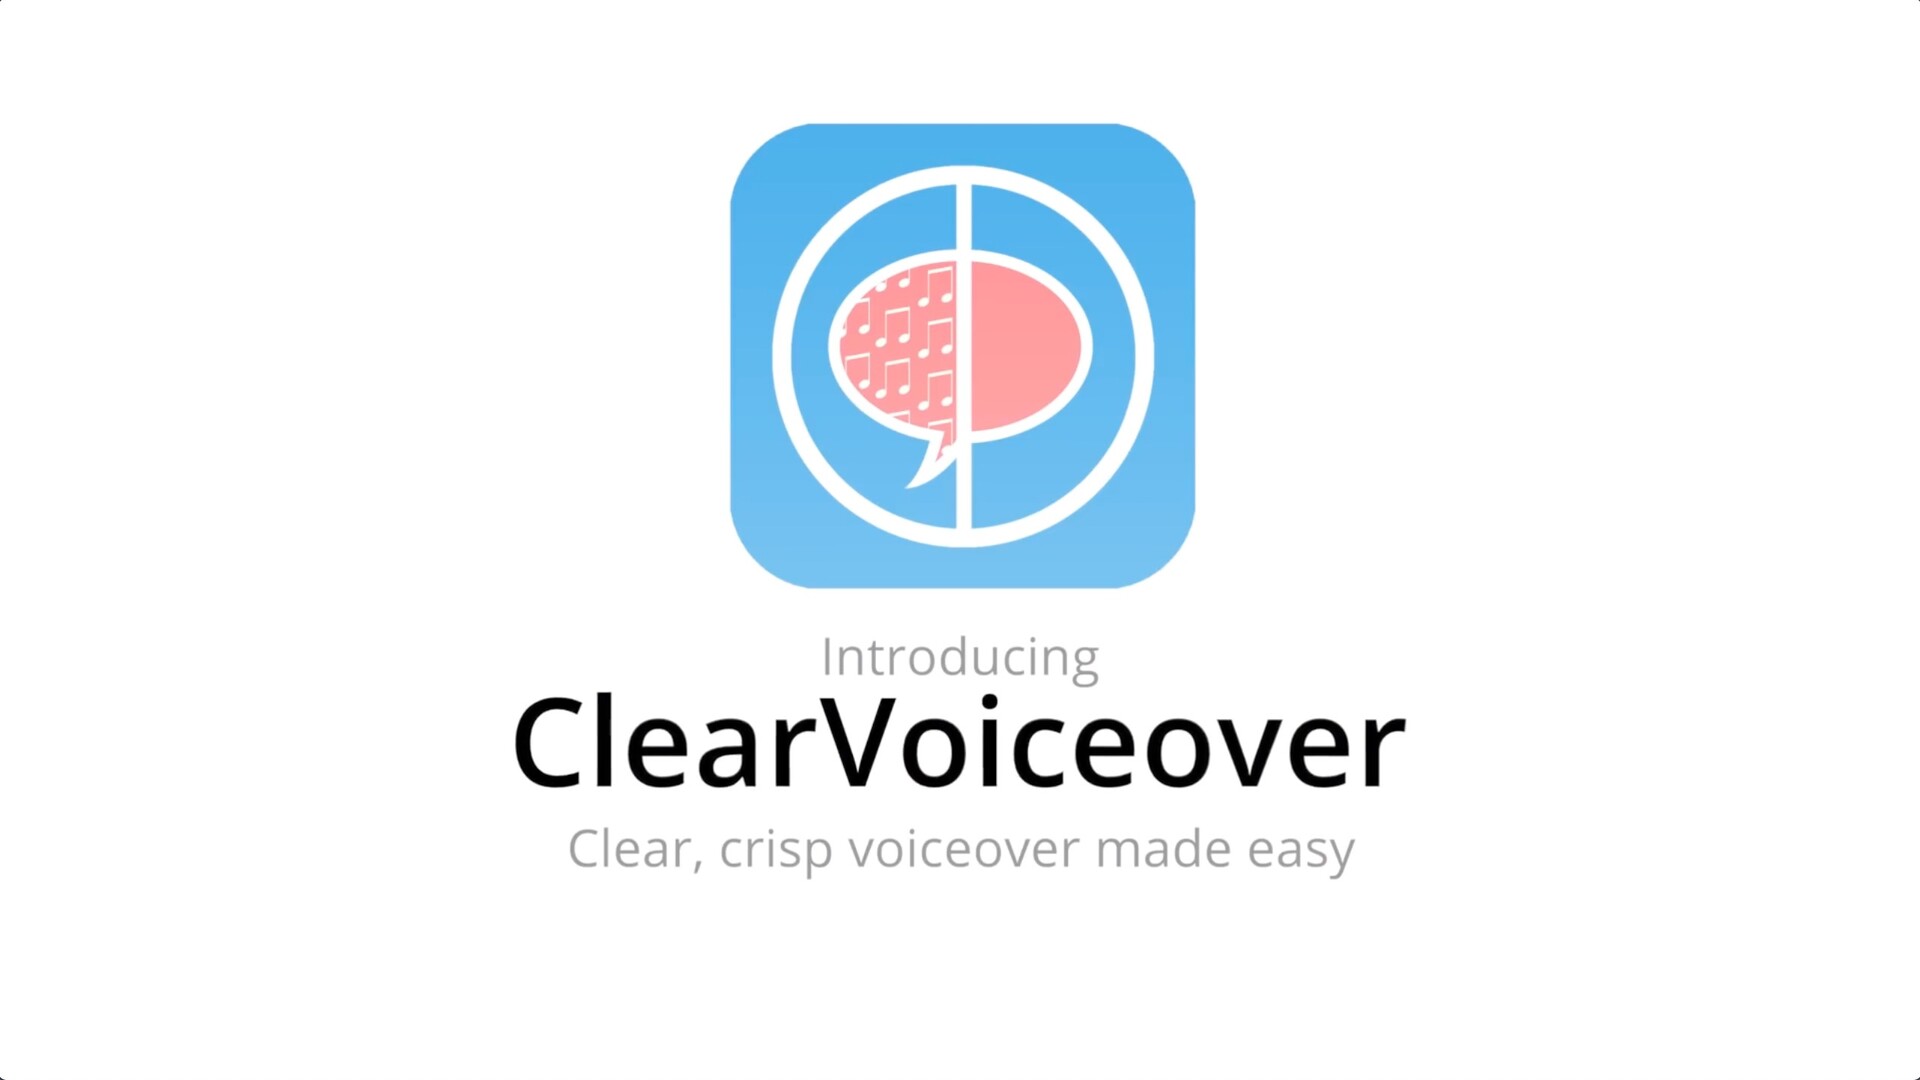 fcpx插件: 清晰配音CrumplePop ClearVoiceover